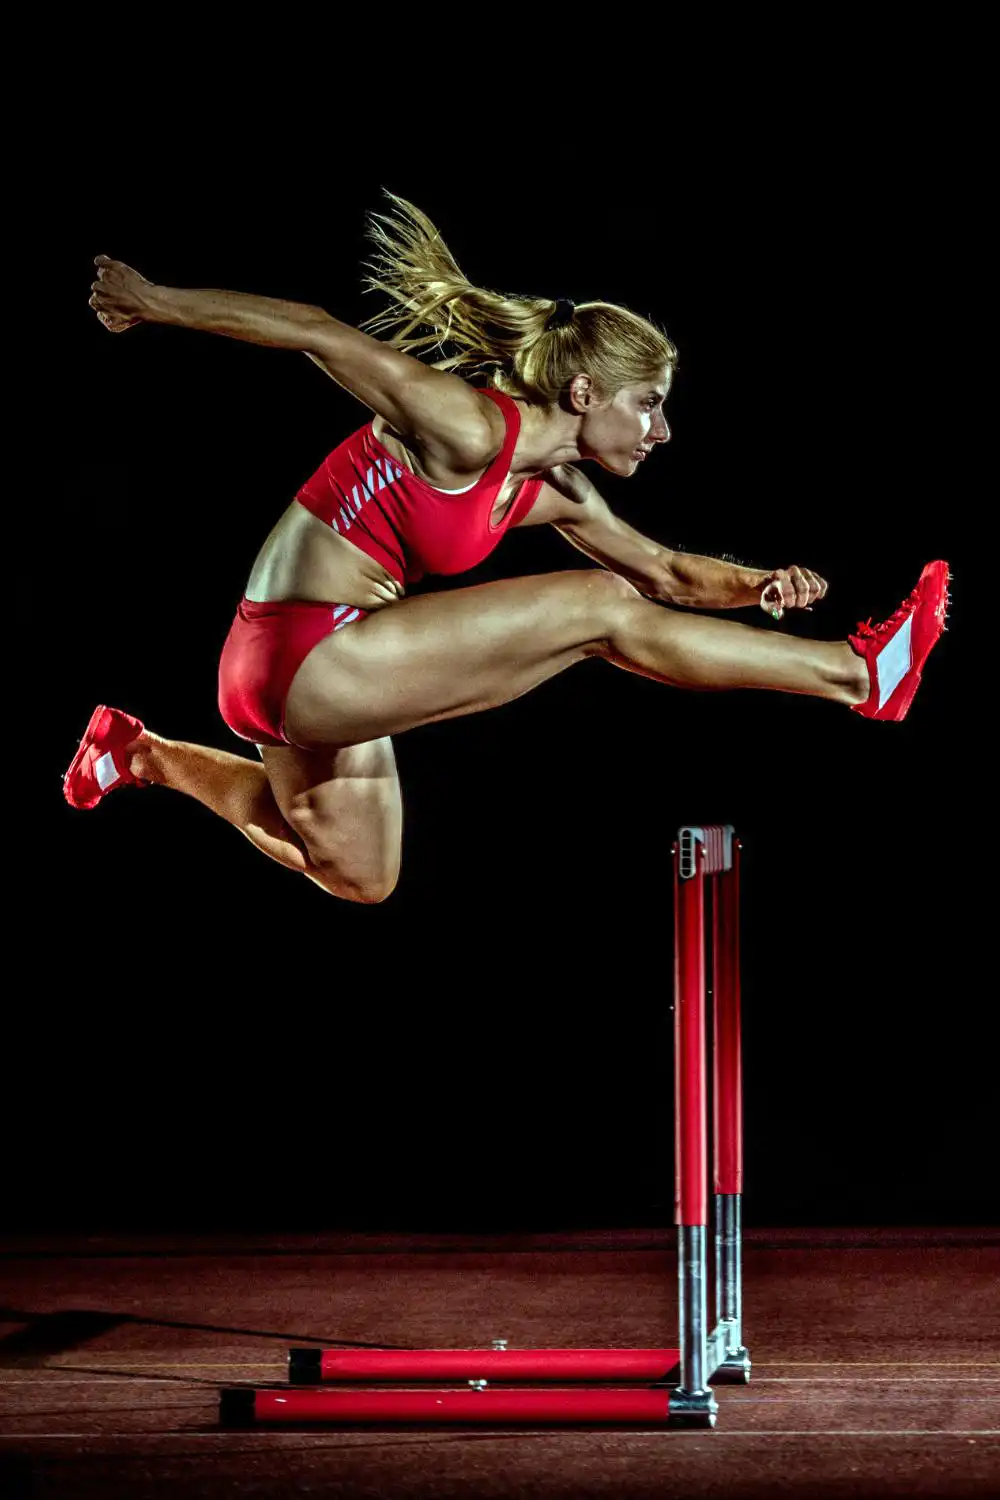 Female athlete jump on the hurdle